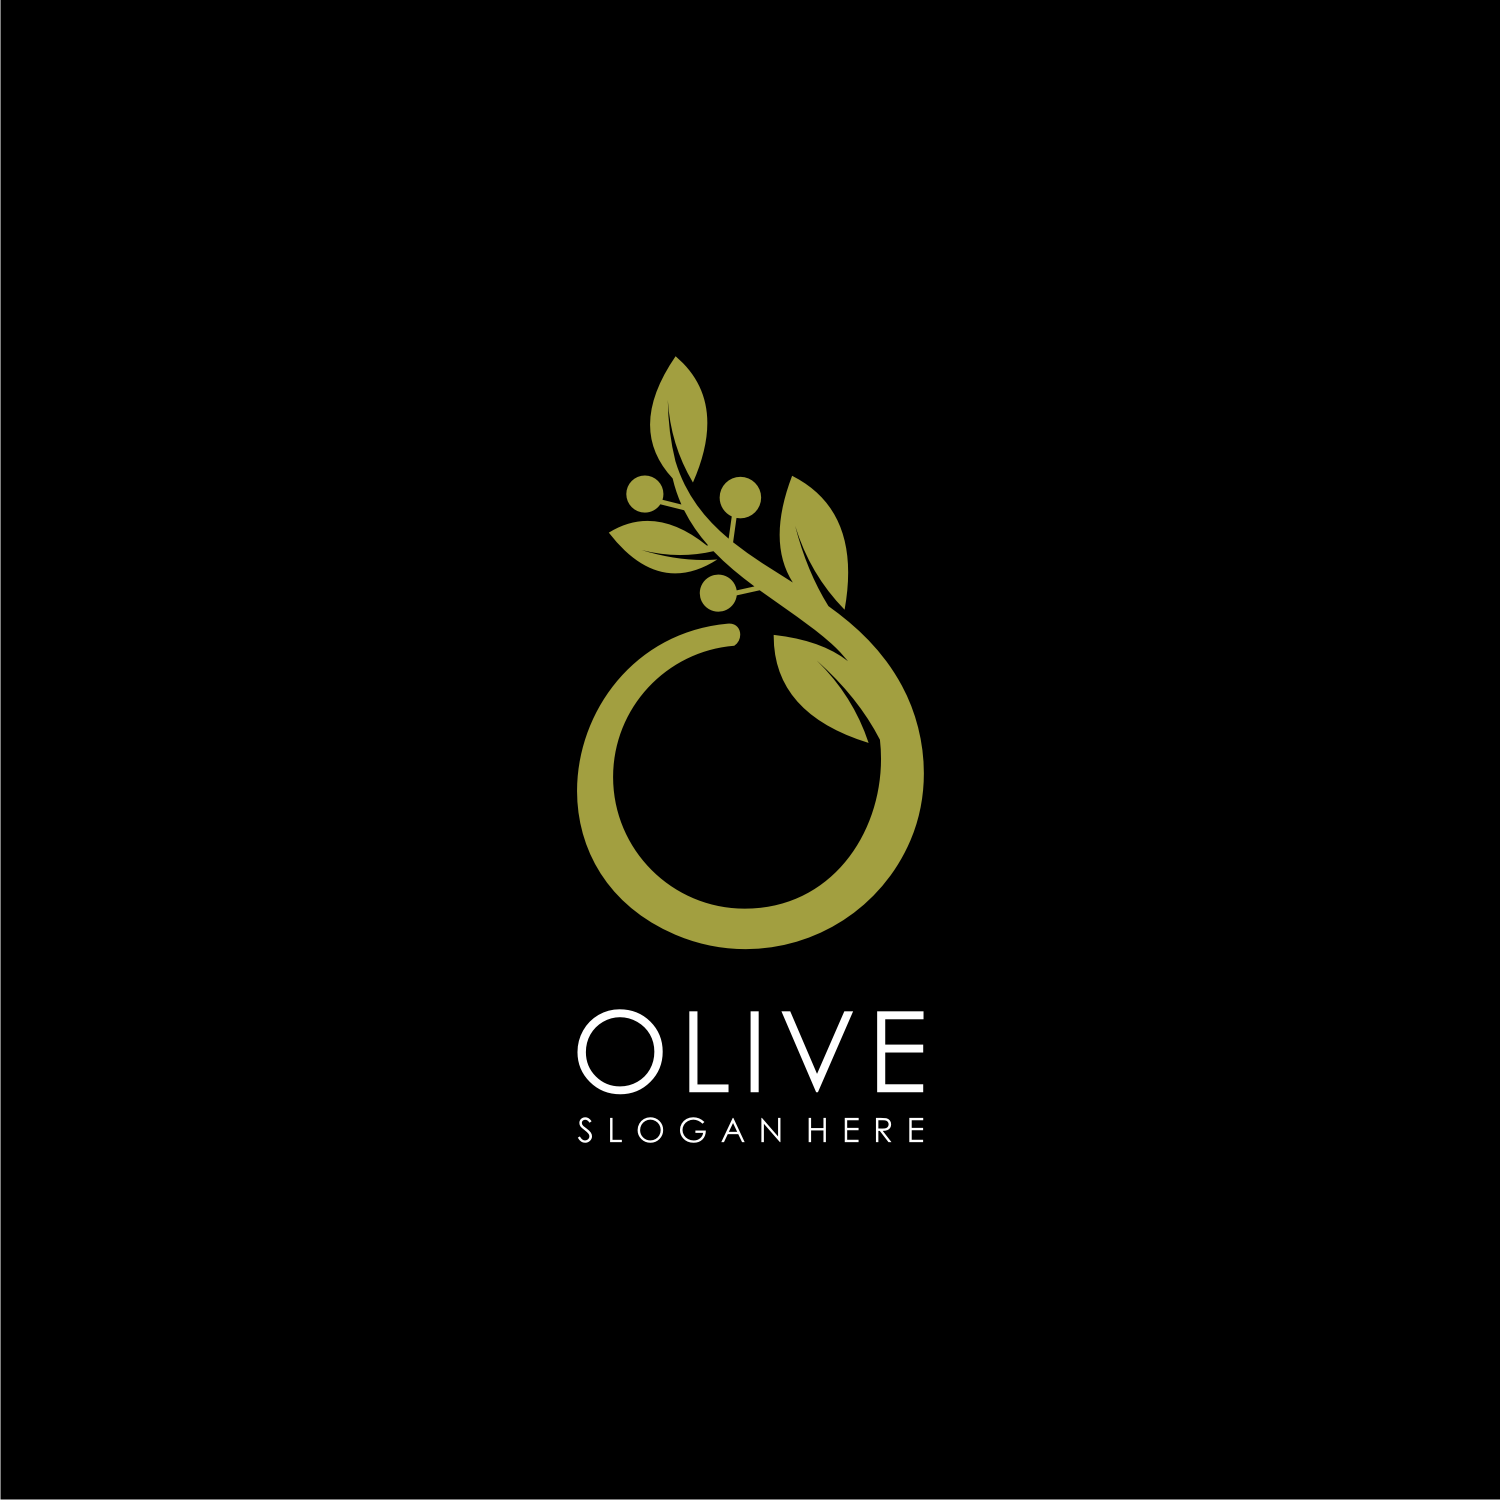 Olive logo design template, Olive oil logo design, Company - UpLabs